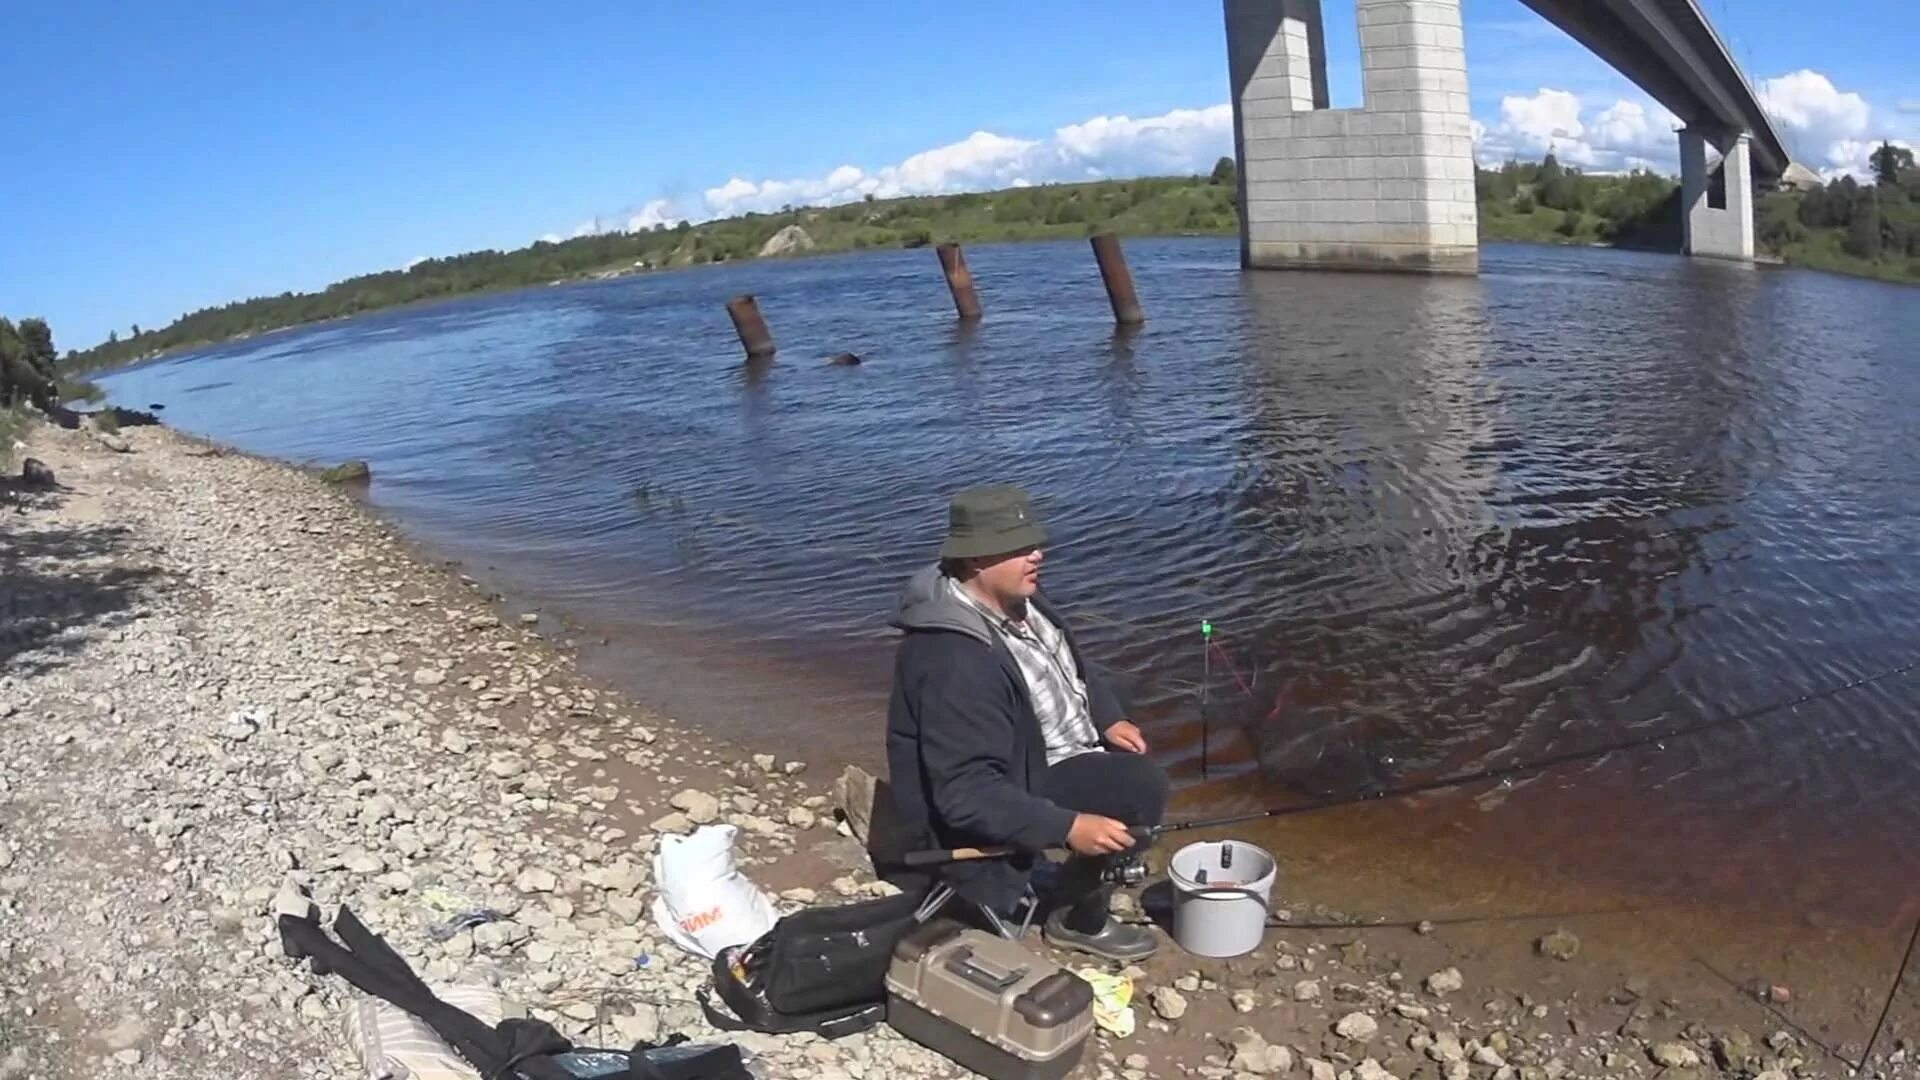 Где рыбачить на реке. Река Волхов Грузино. Река Волхов рыбалка. Рыбалка в Грузино на Волхове. Устье реки Волхов новая Ладога.